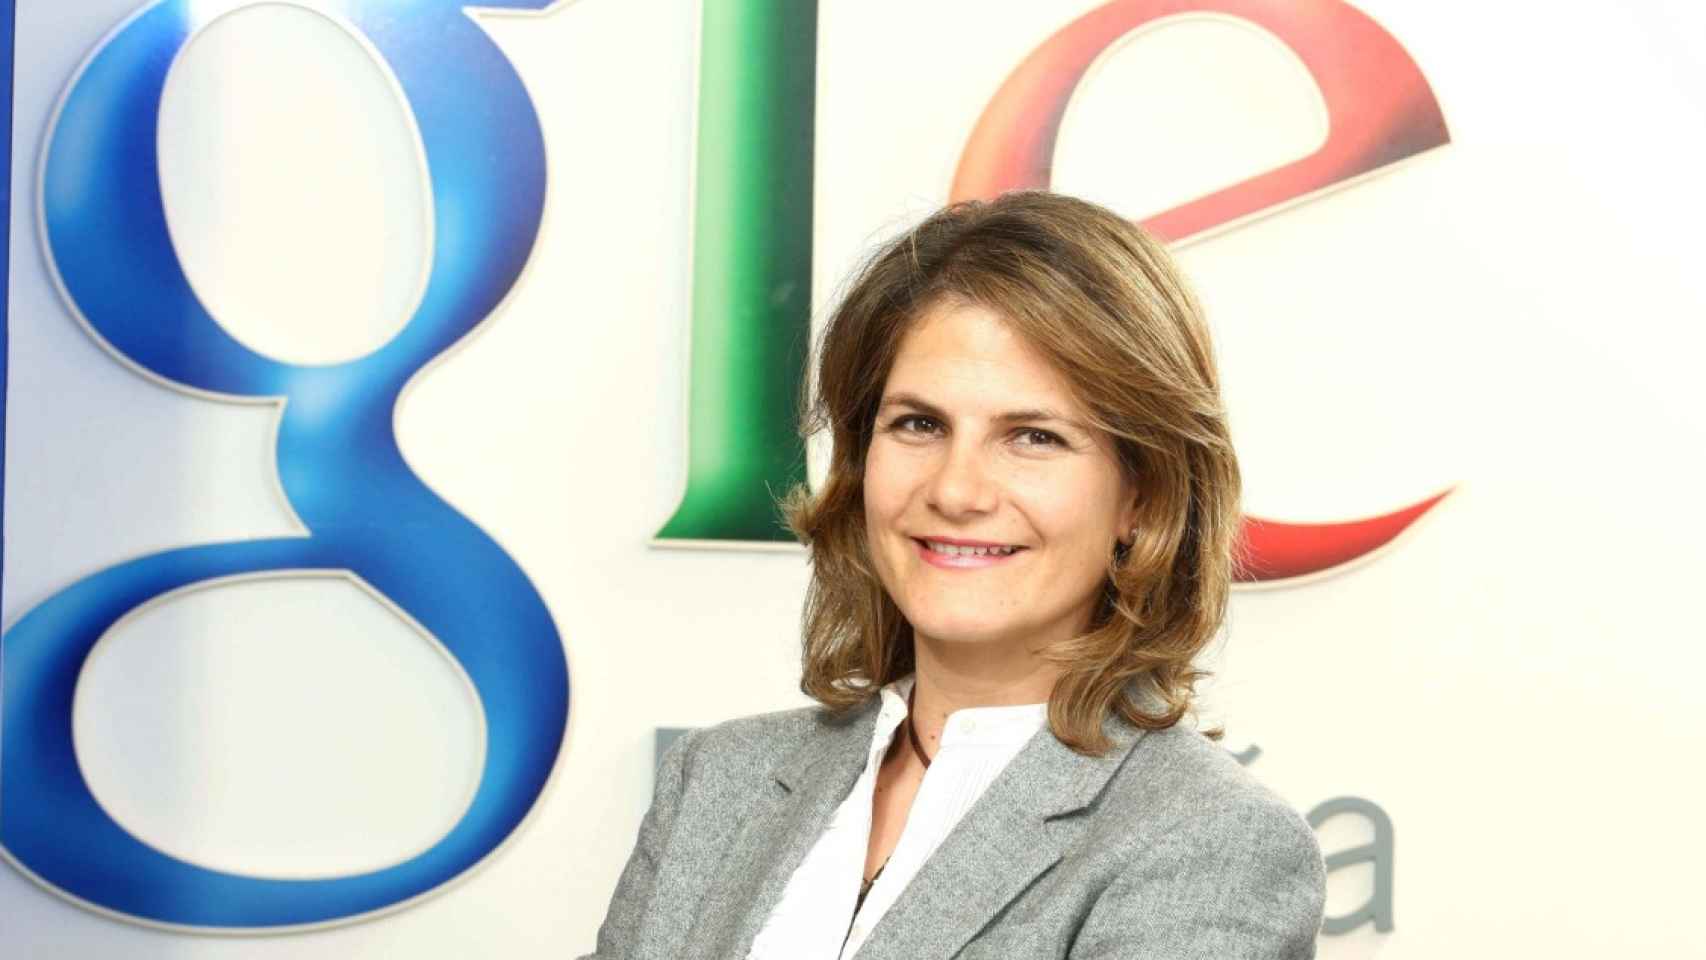 Fuencisla Clemares, directora de Google en España y Portugal / EP